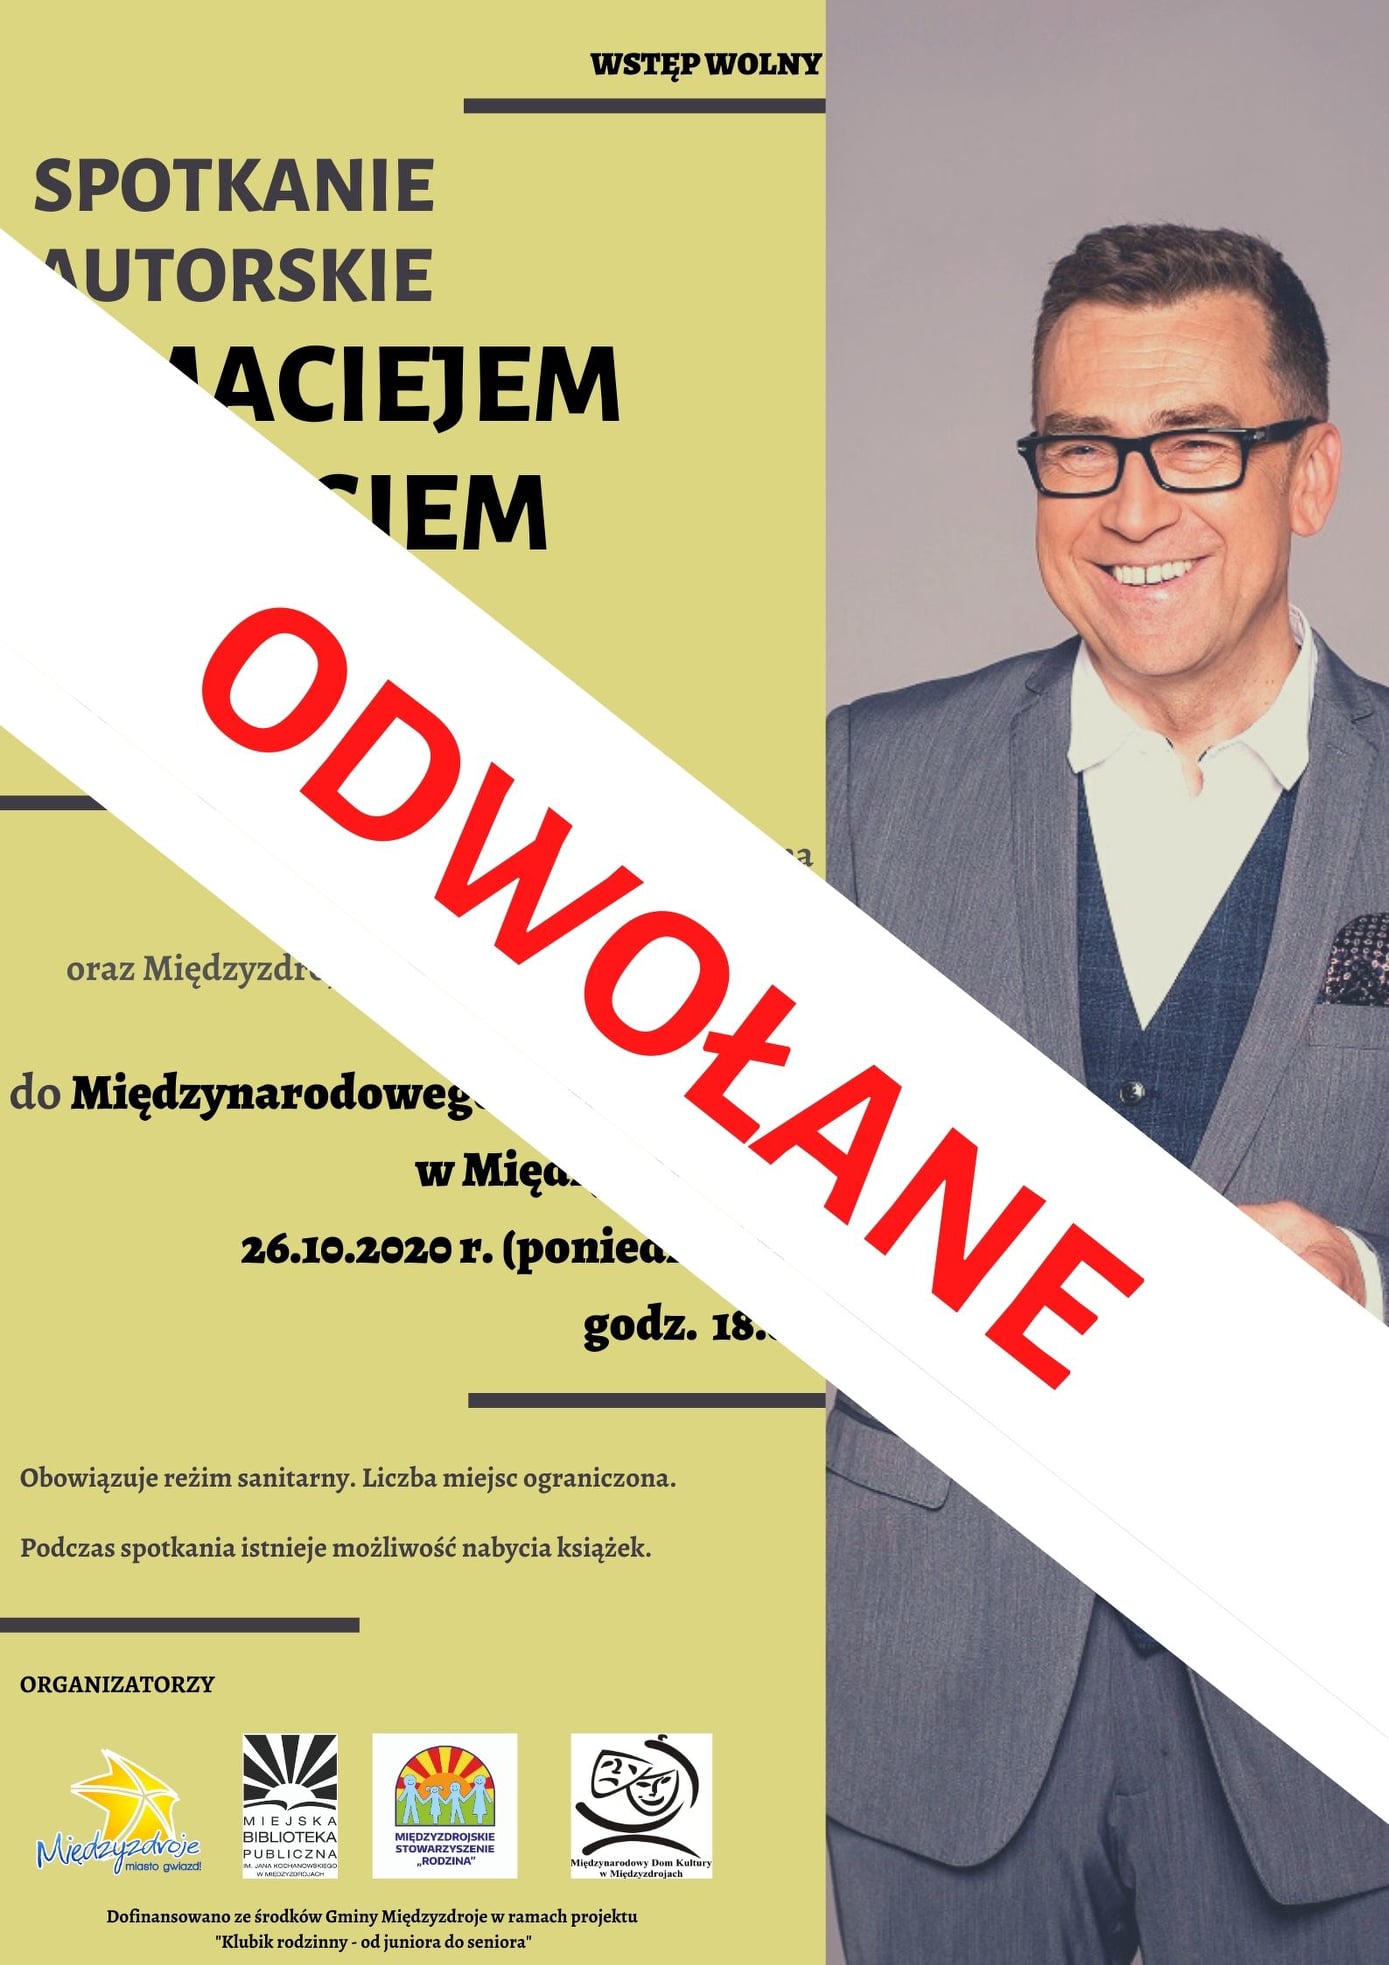 Spotkanie autorskie z Maciejem Orłosiem w Międzyzdrojach odwołane